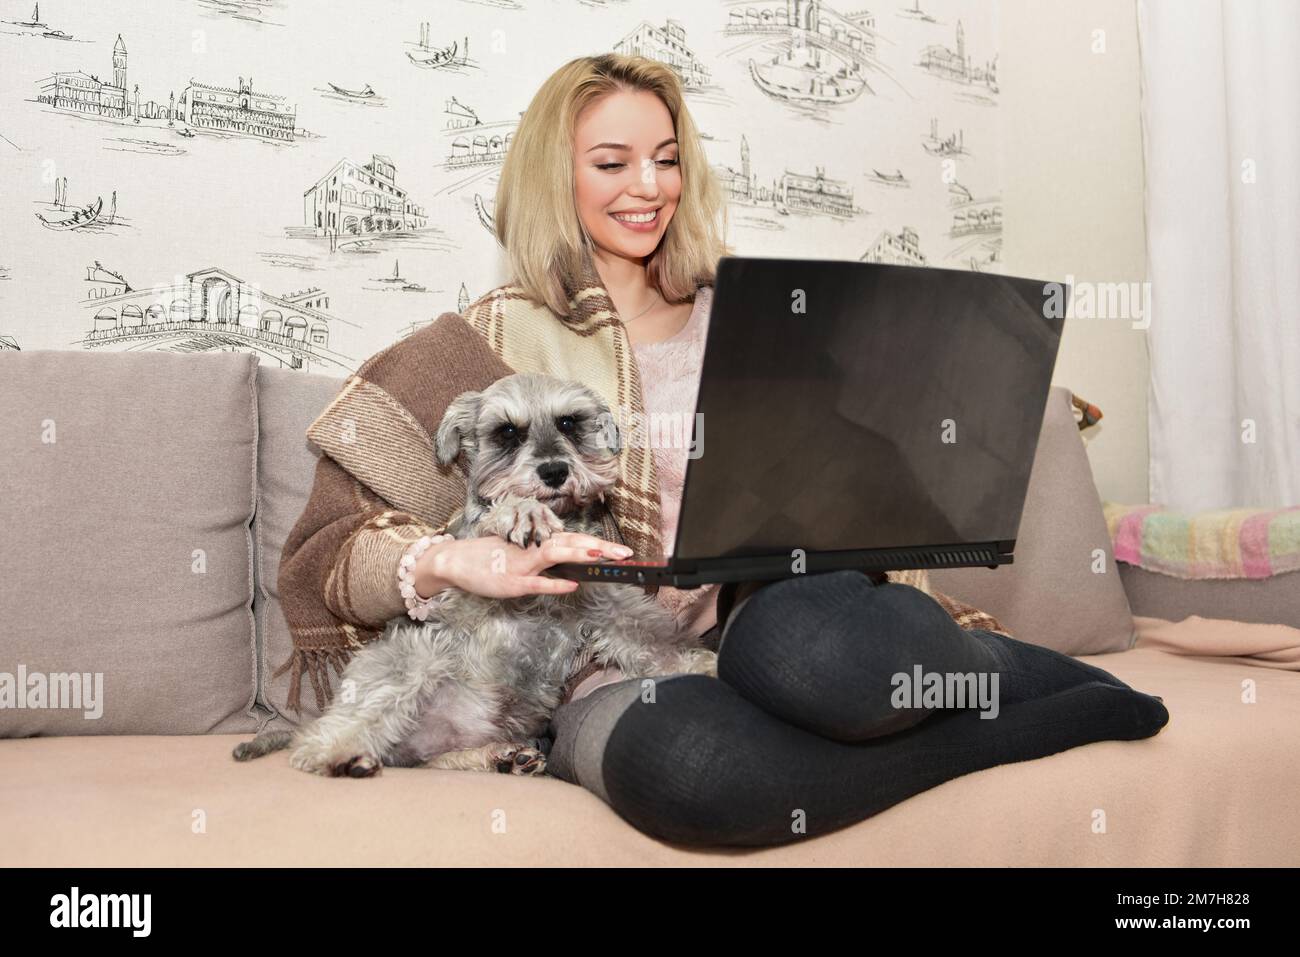 Hermosa mujer rubia sonríe y abraza a un perro lindo en el sofá mientras ve películas en una computadora portátil. Foto de stock